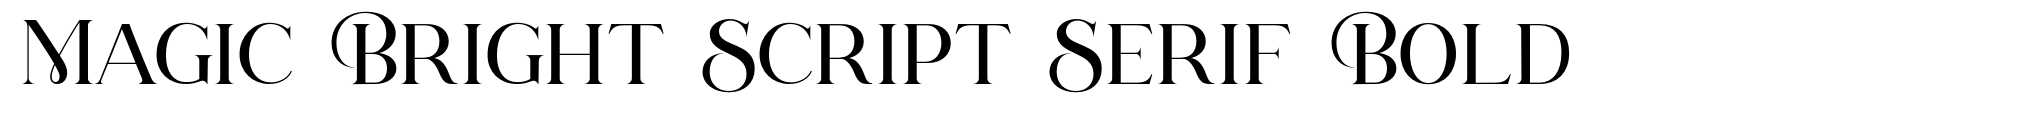 Magic Bright Script Serif Bold image